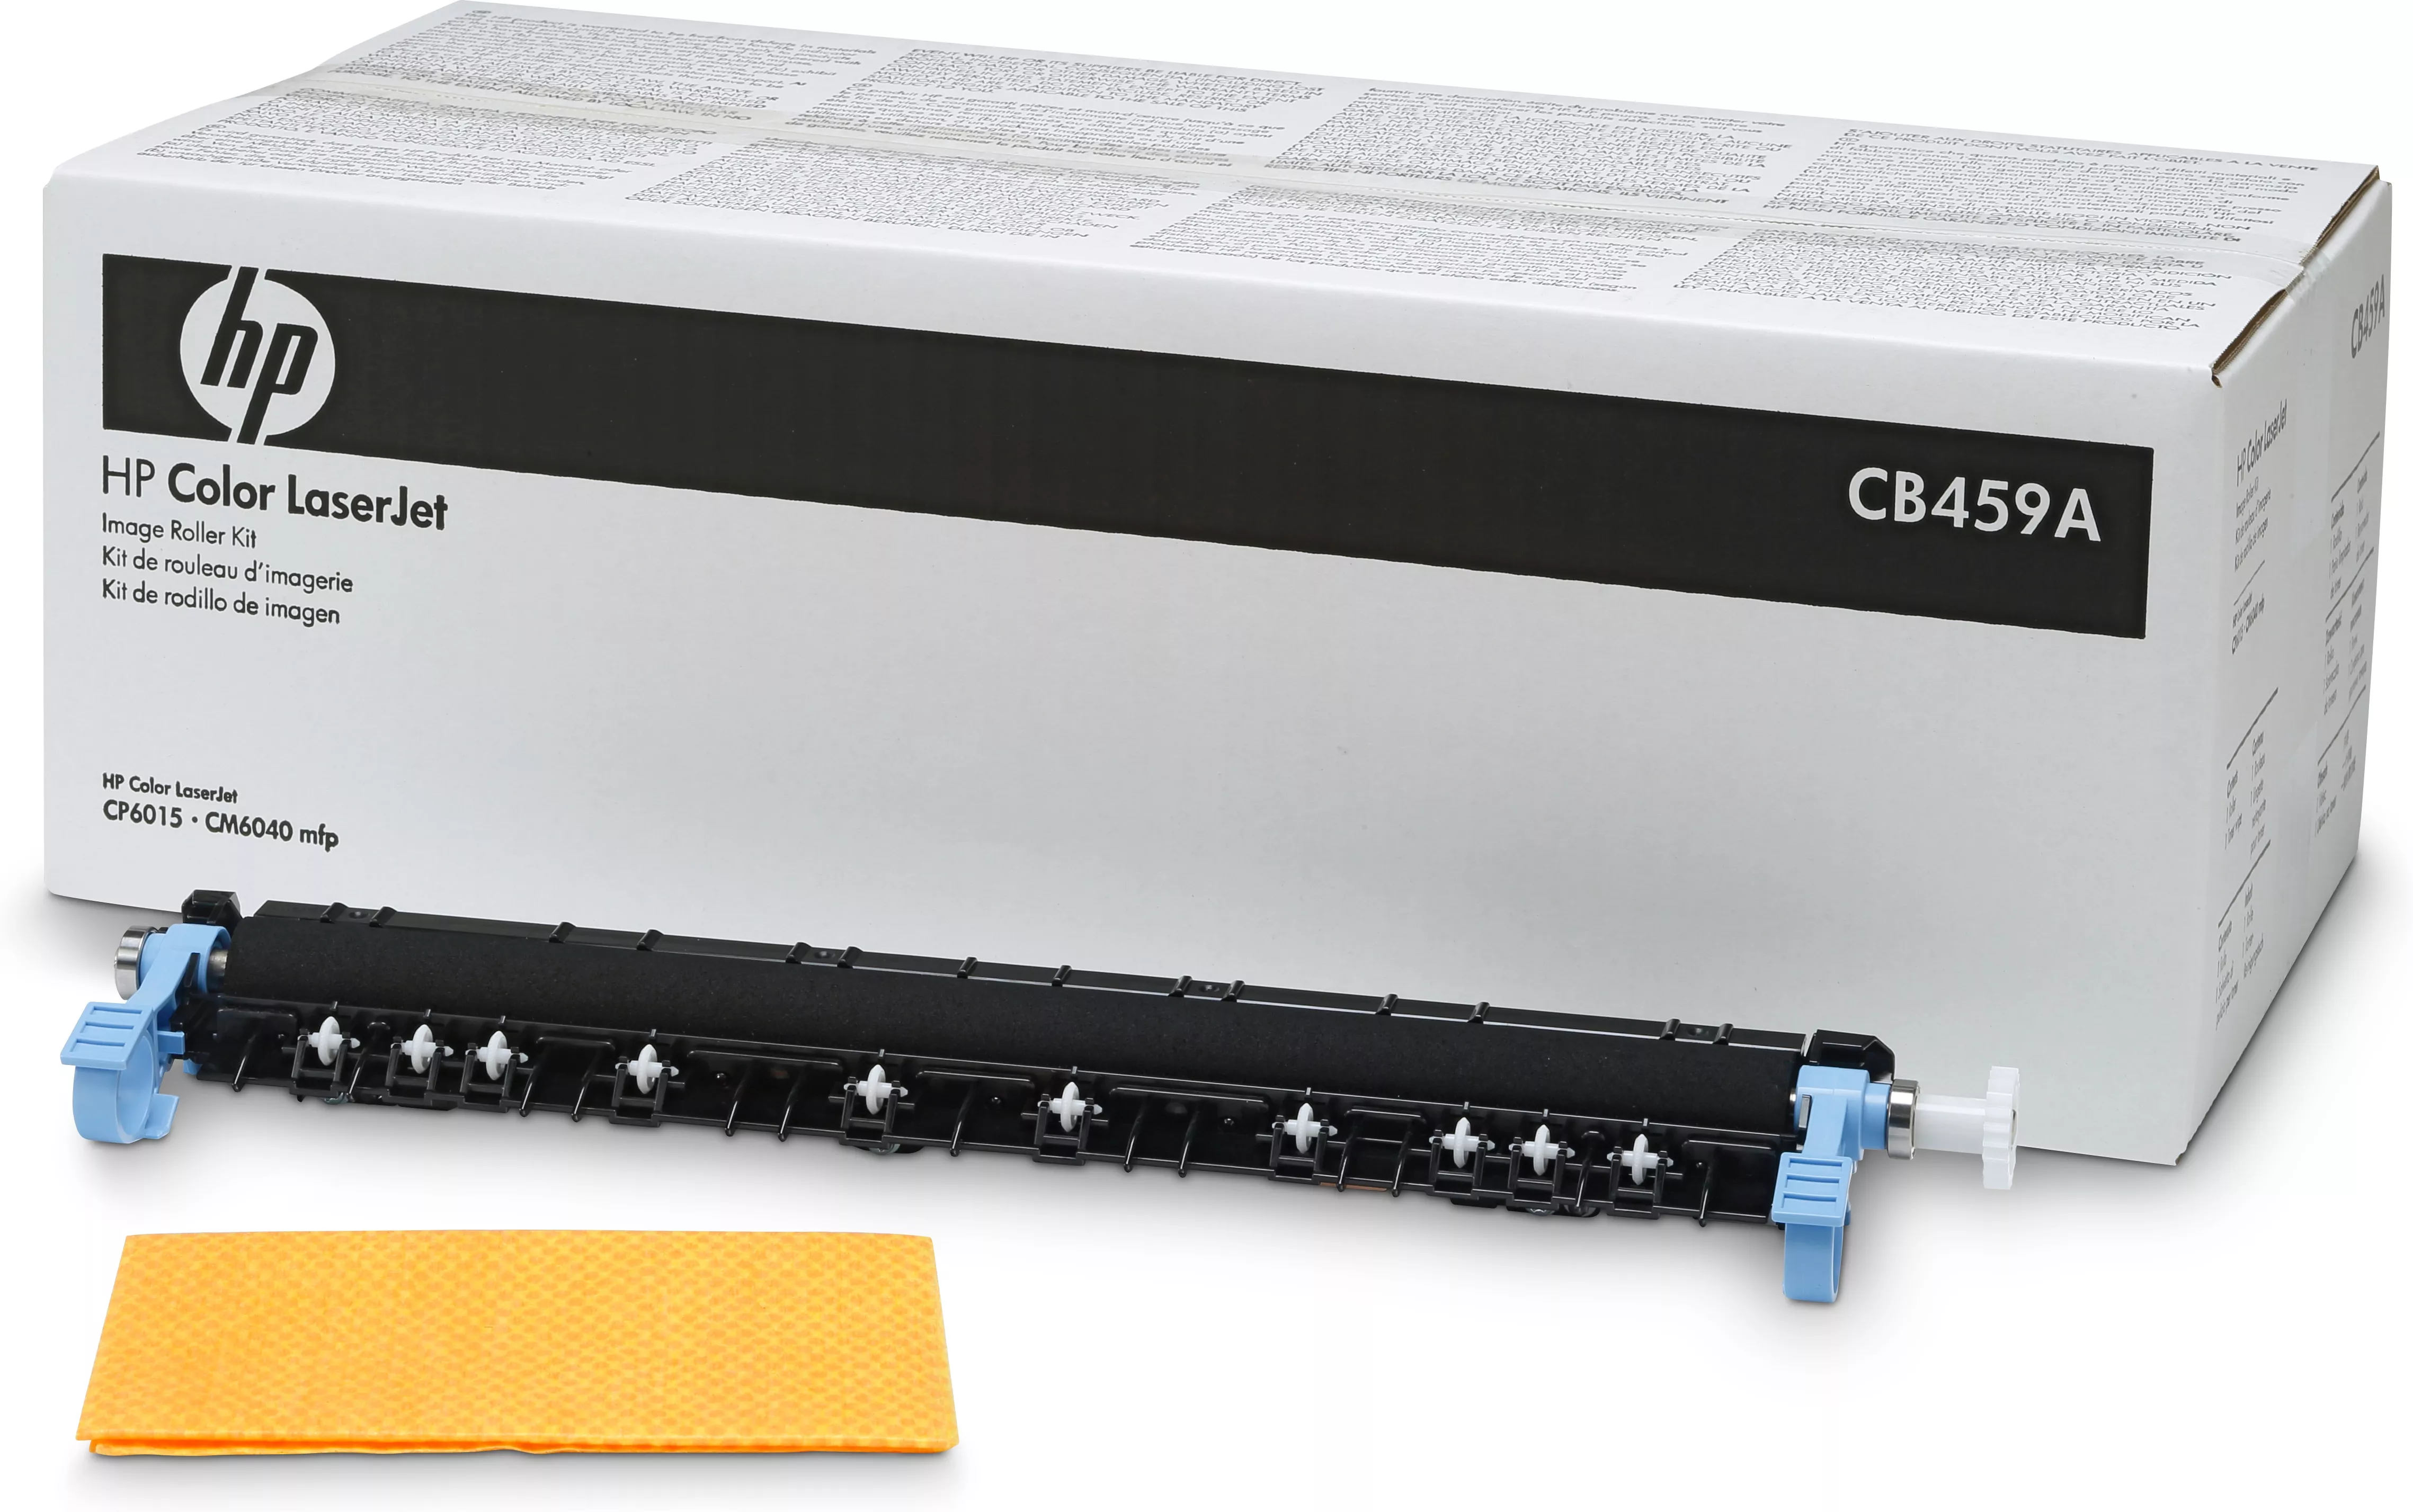 Revendeur officiel HP Color LaserJet CB459A Roller Kit